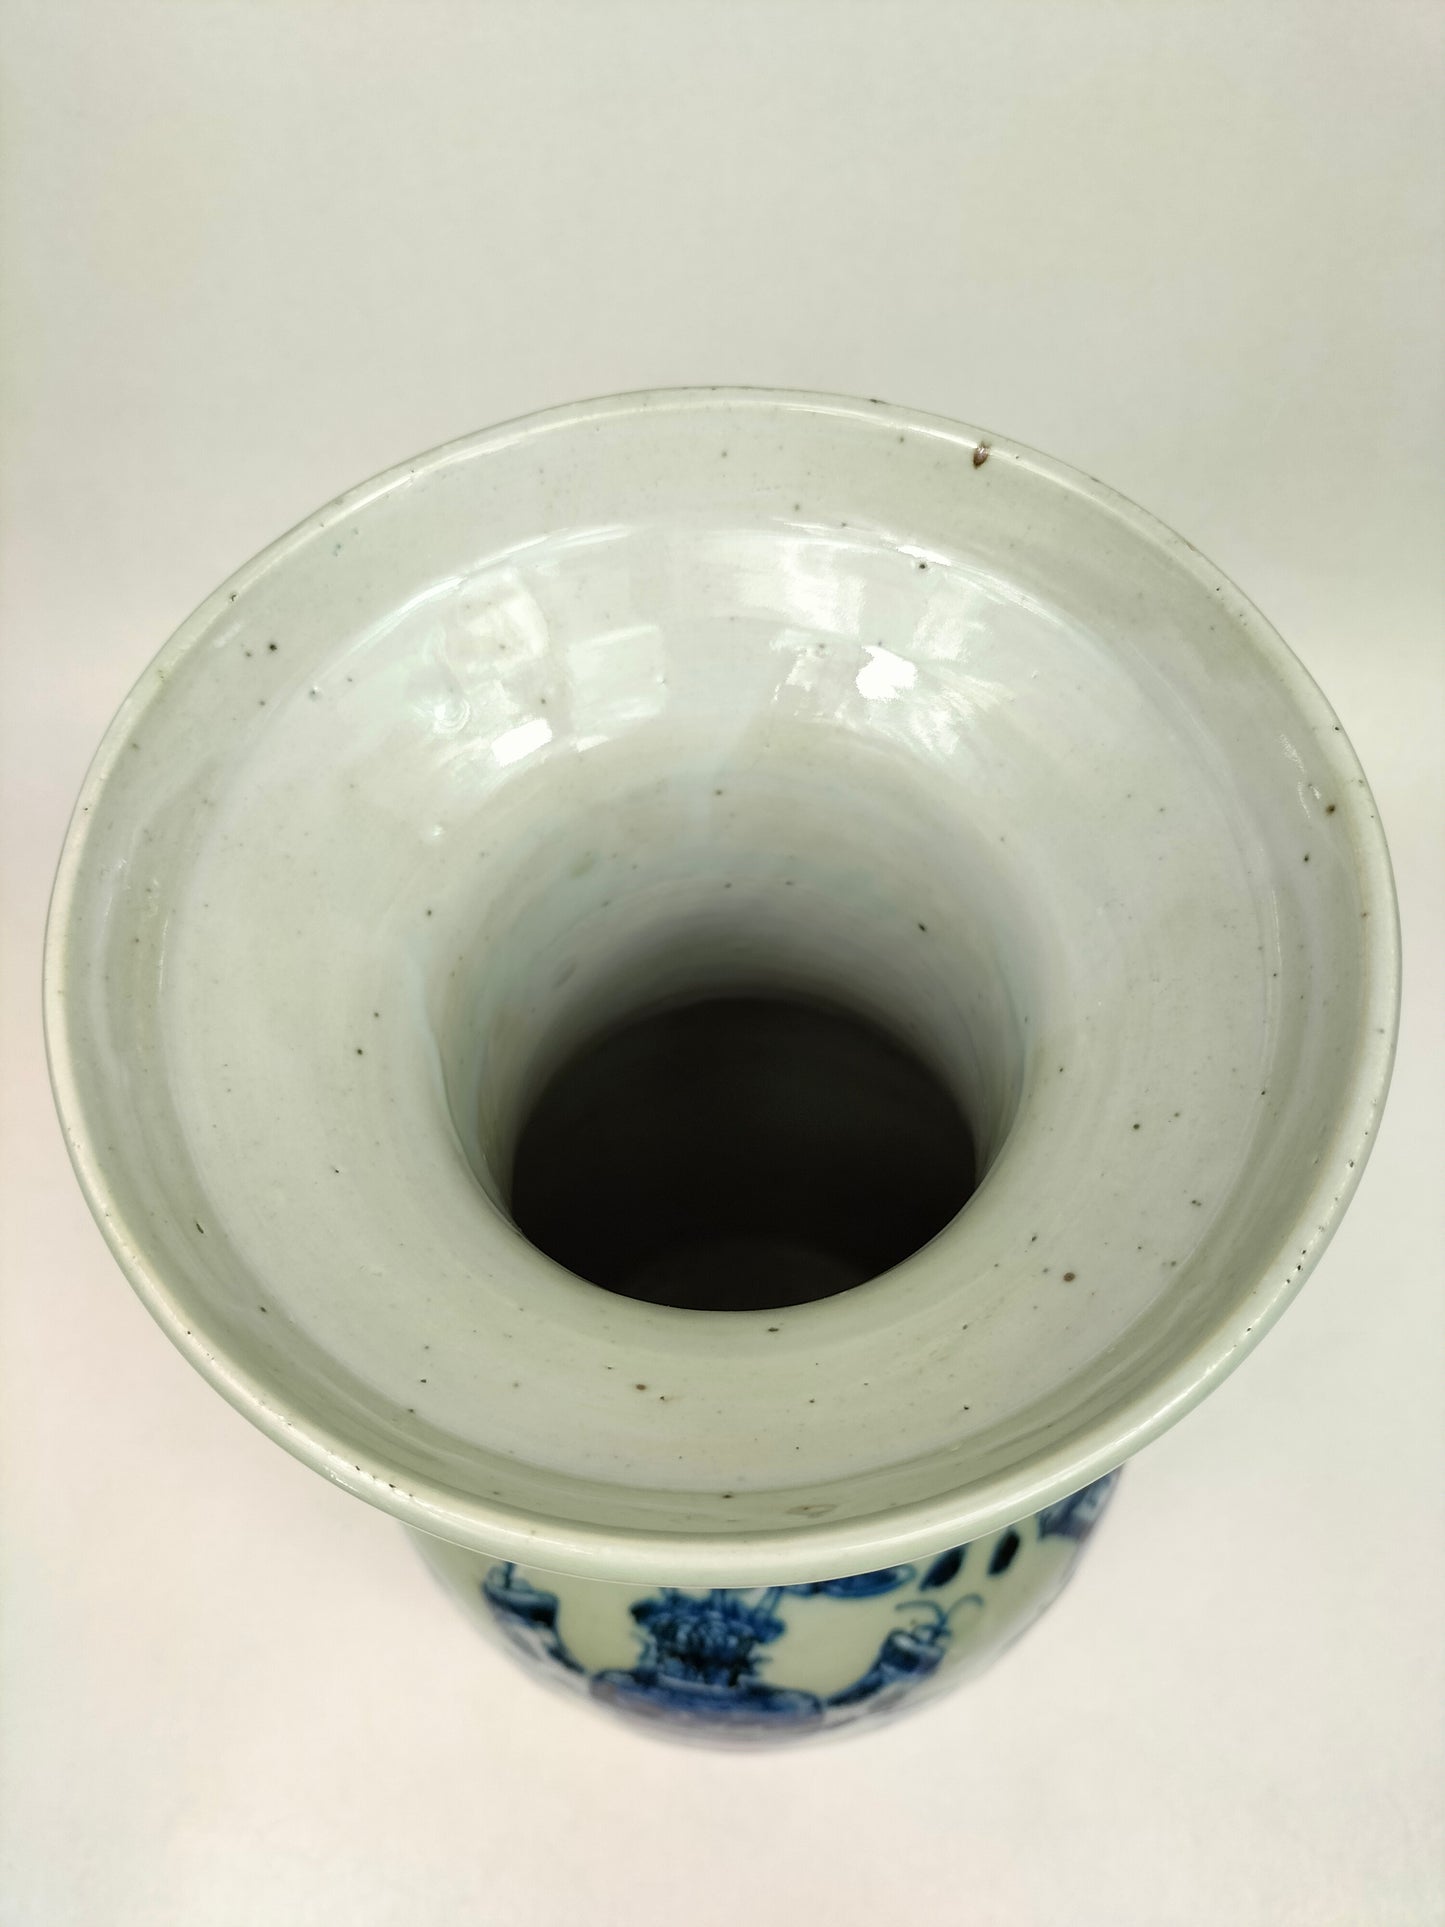 Ancien vase chinois céladon décoré d'antiquités // Dynastie Qing - 19e siècle